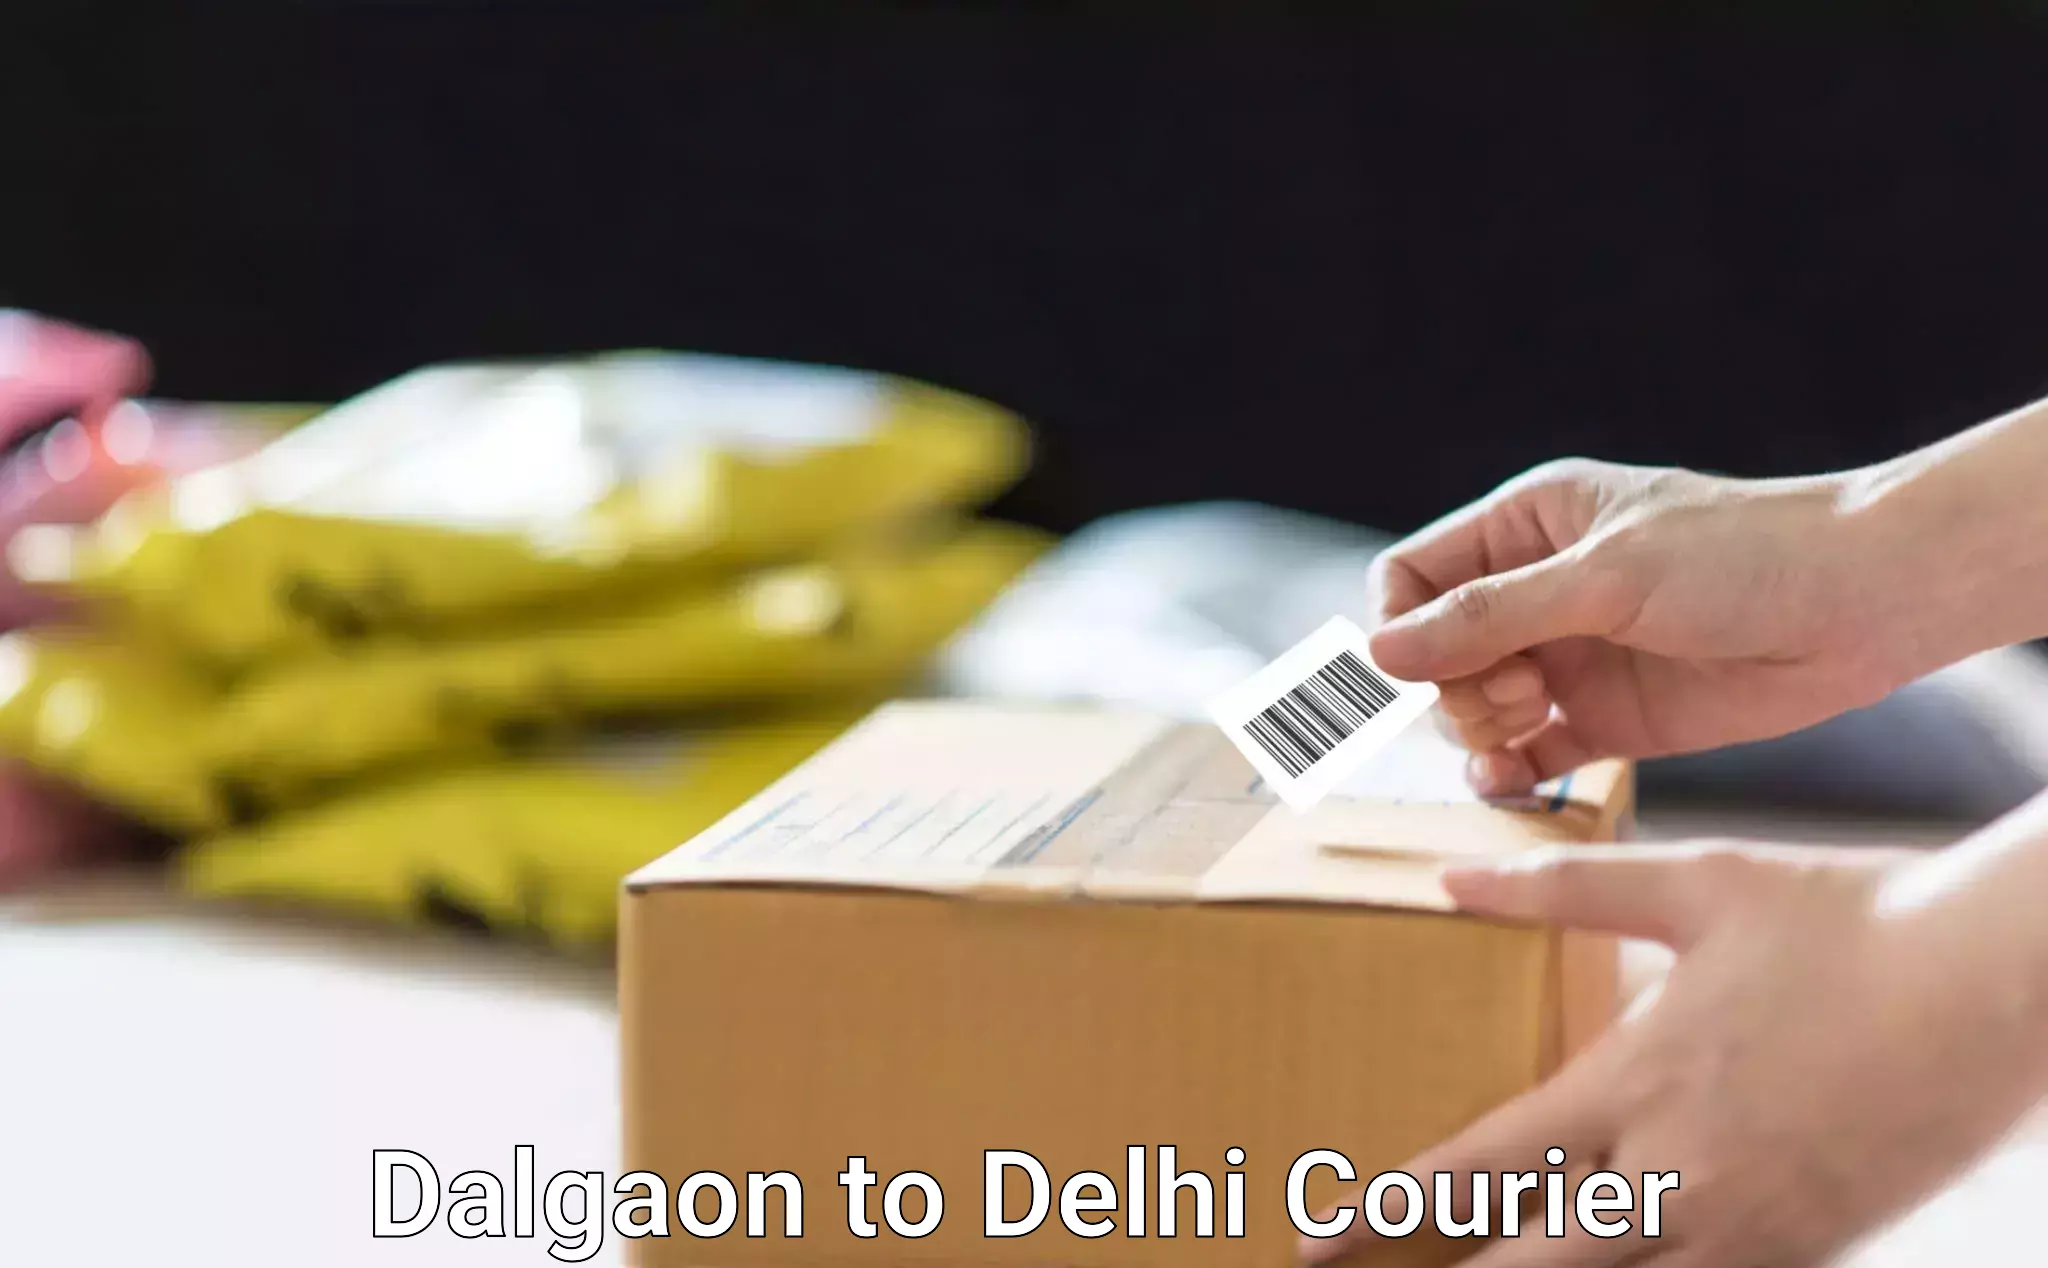 High-priority parcel service Dalgaon to Kalkaji